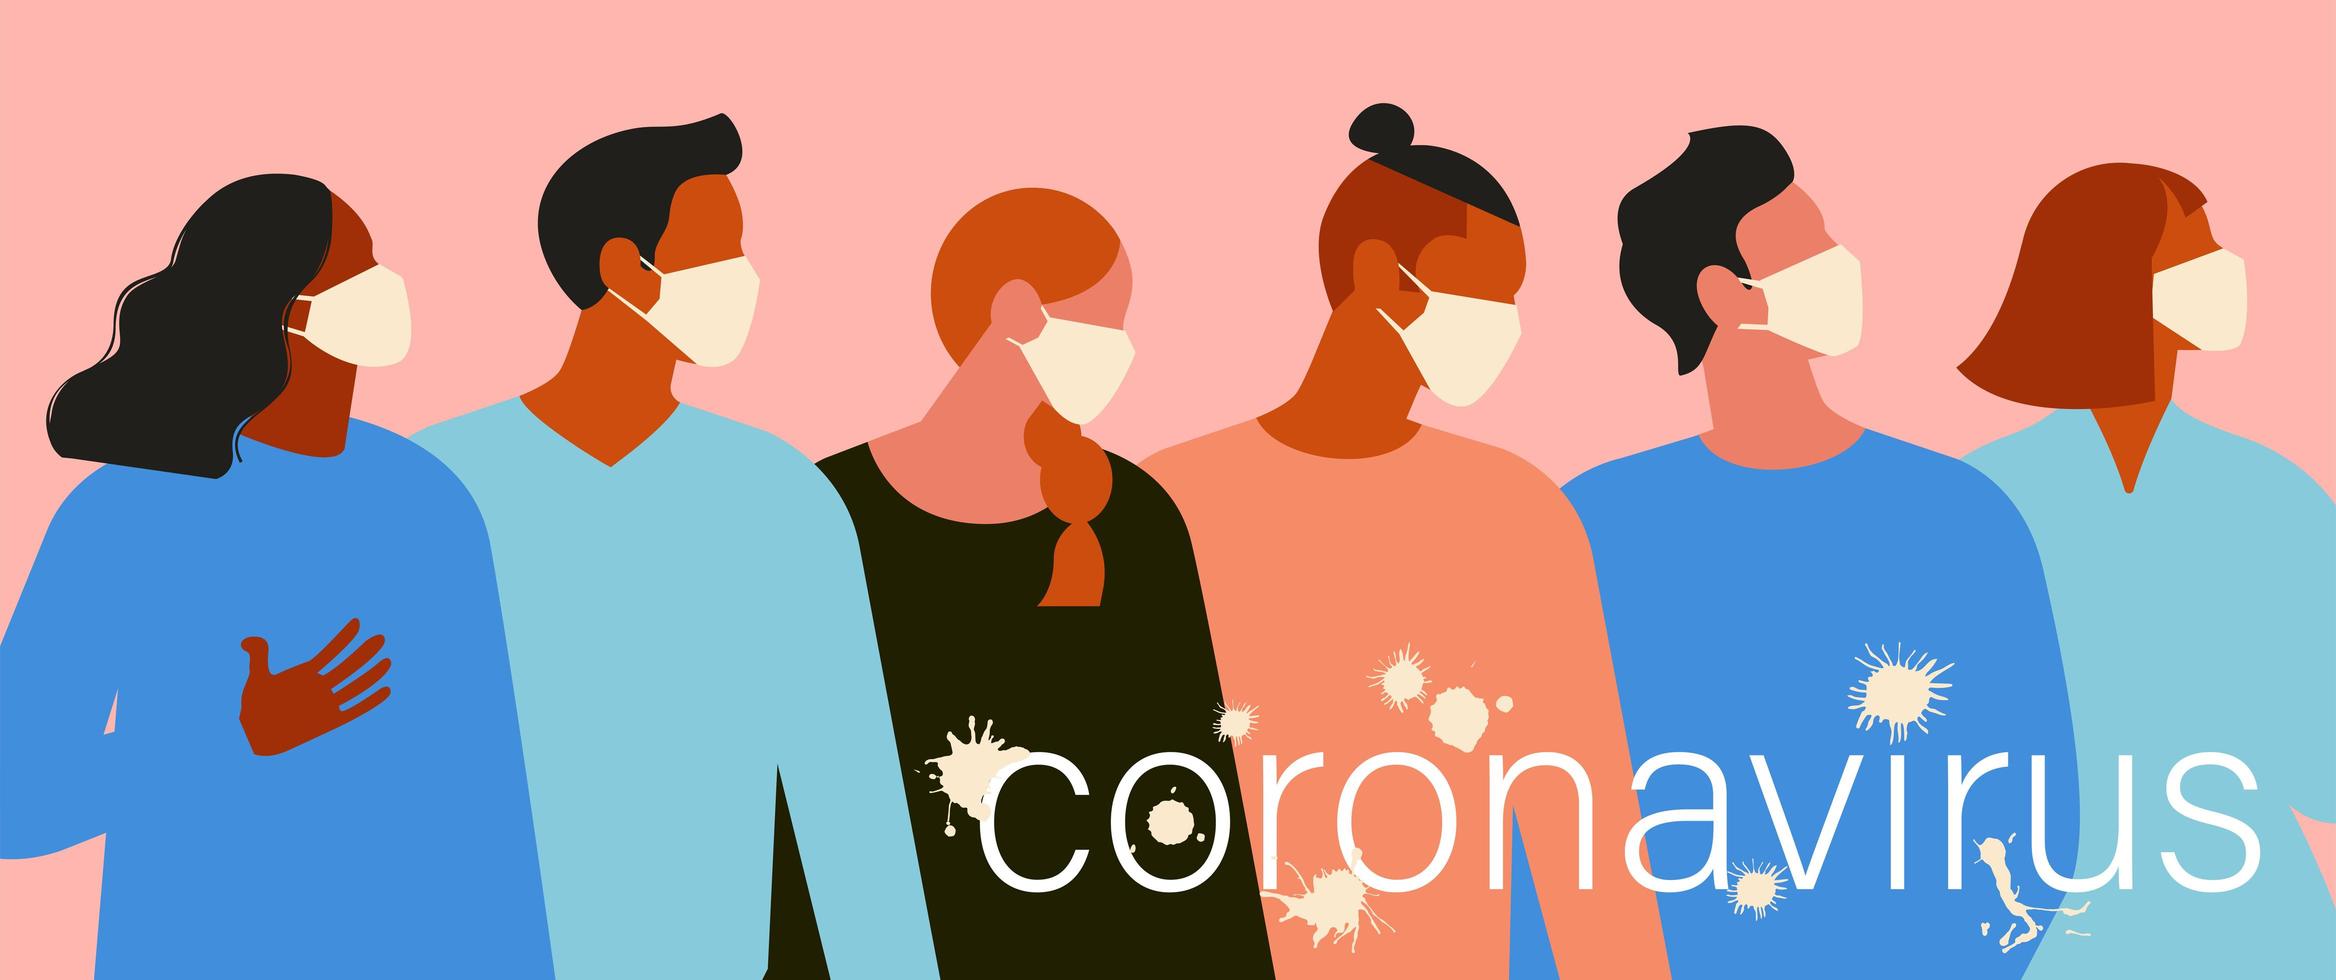 nuovo coronavirus 2019 ncov, donne e uomini con maschera facciale medica. concetto di quarantena del coronavirus. il virus è come le macchie. illustrazione vettoriale. vettore